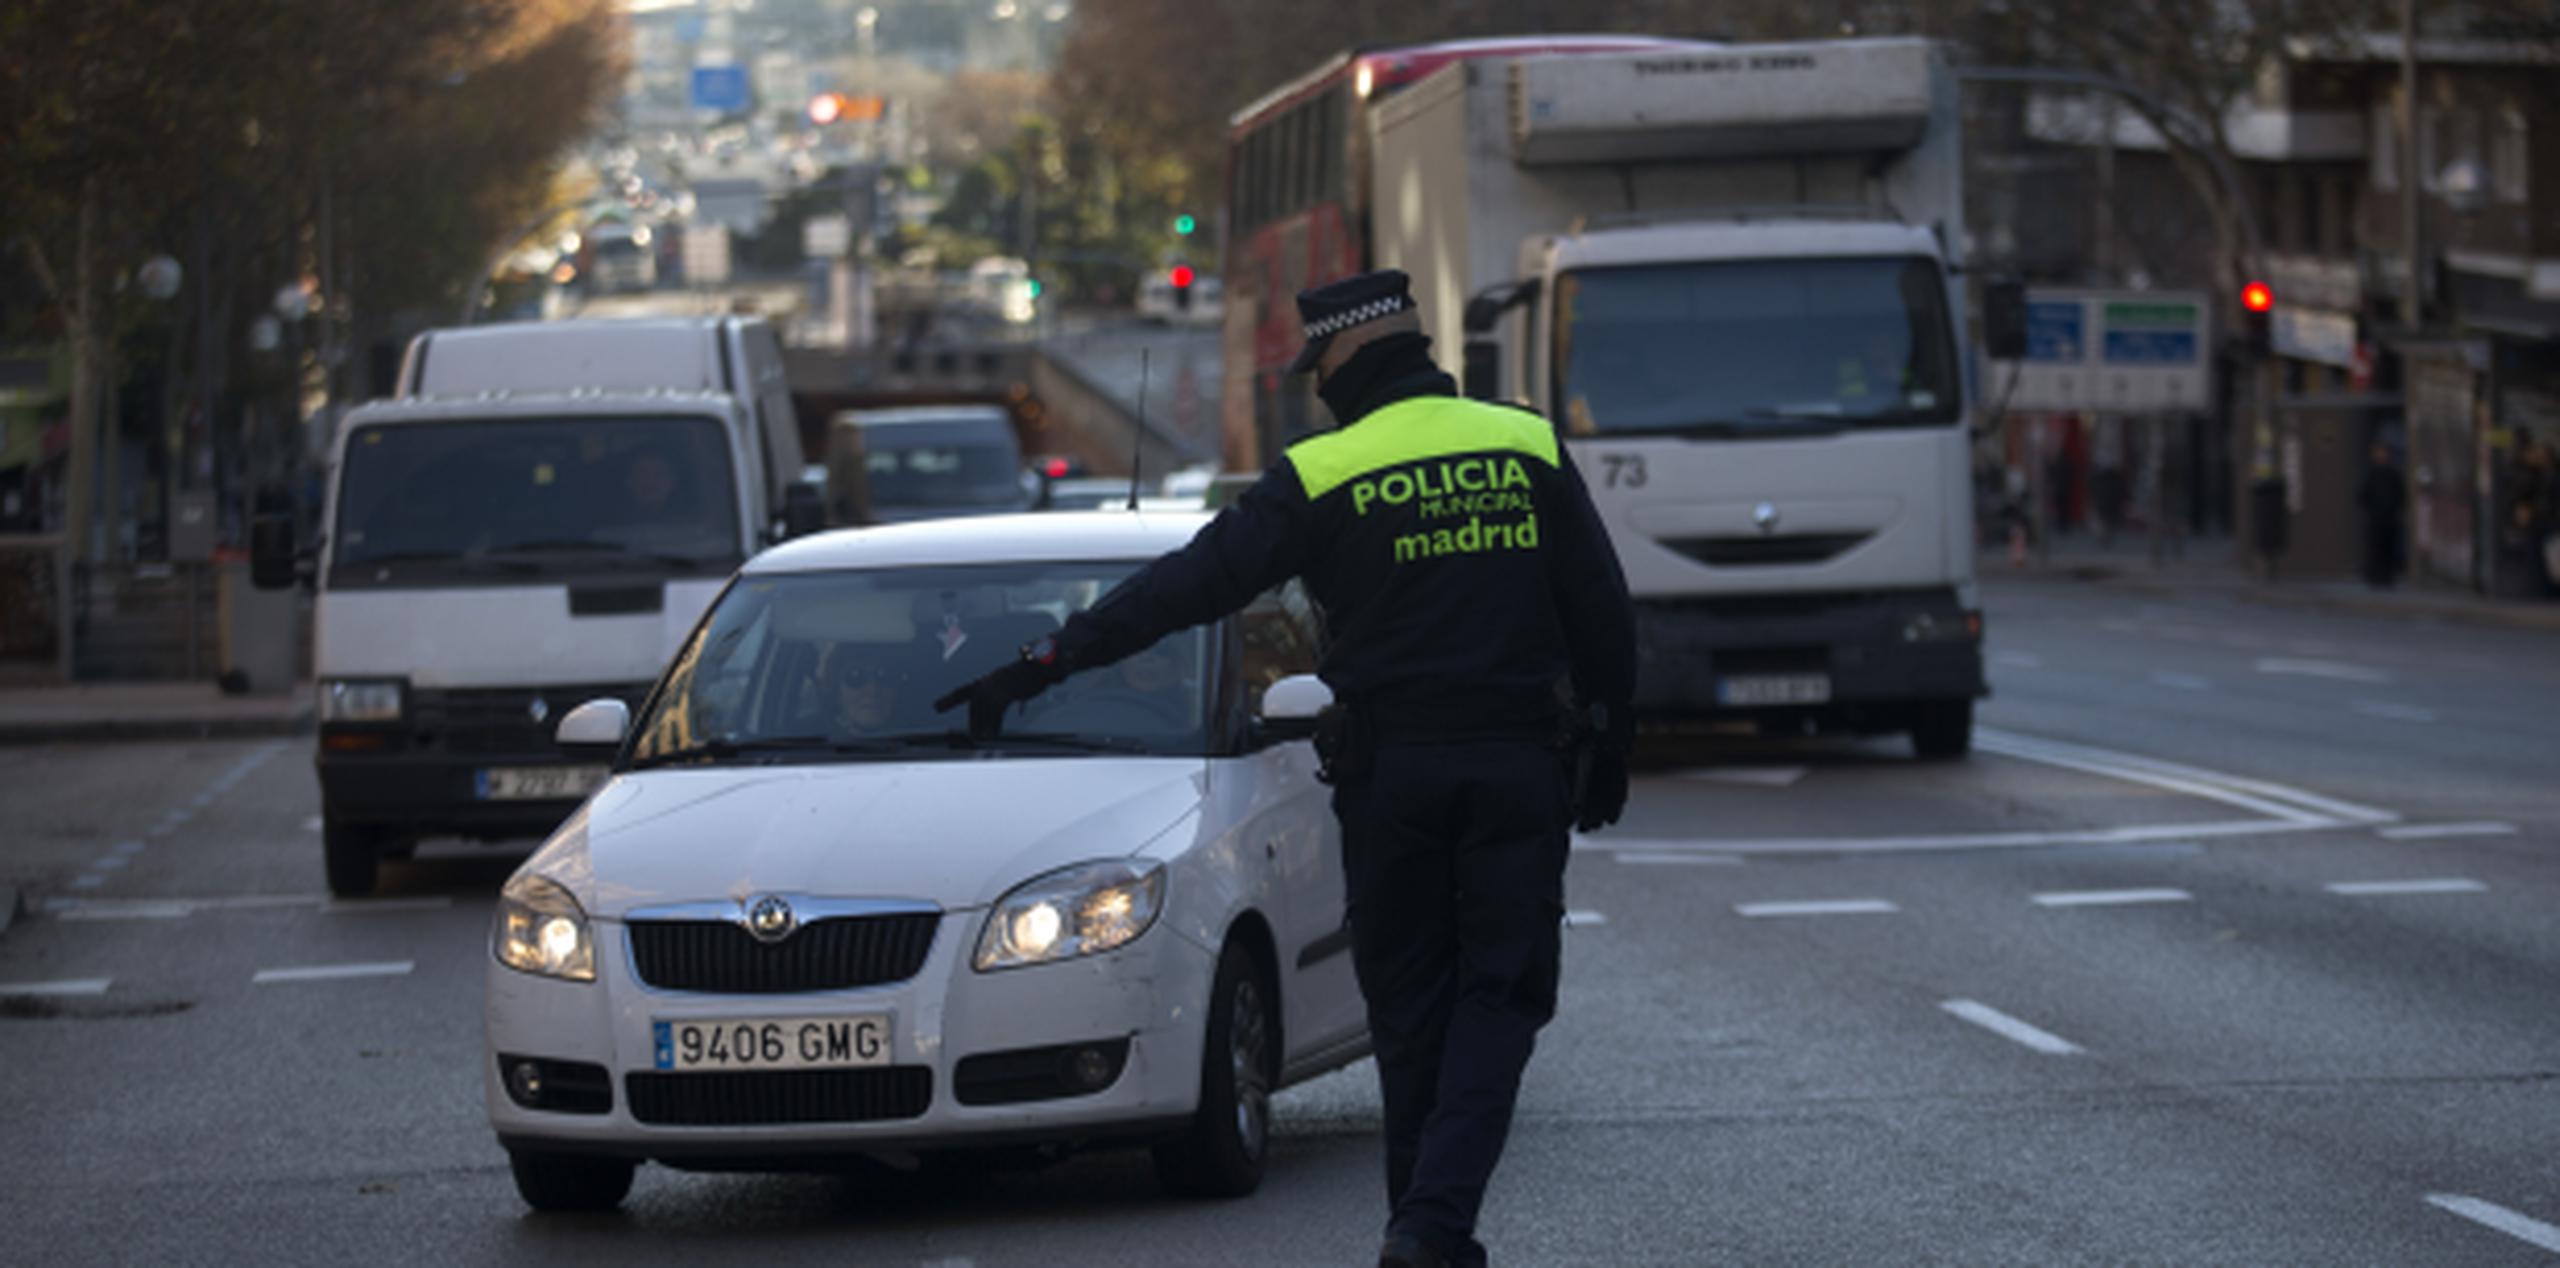 La Policía Nacional española decidió reforzar la seguridad en la capital española. (AP/Francisco Seco)
